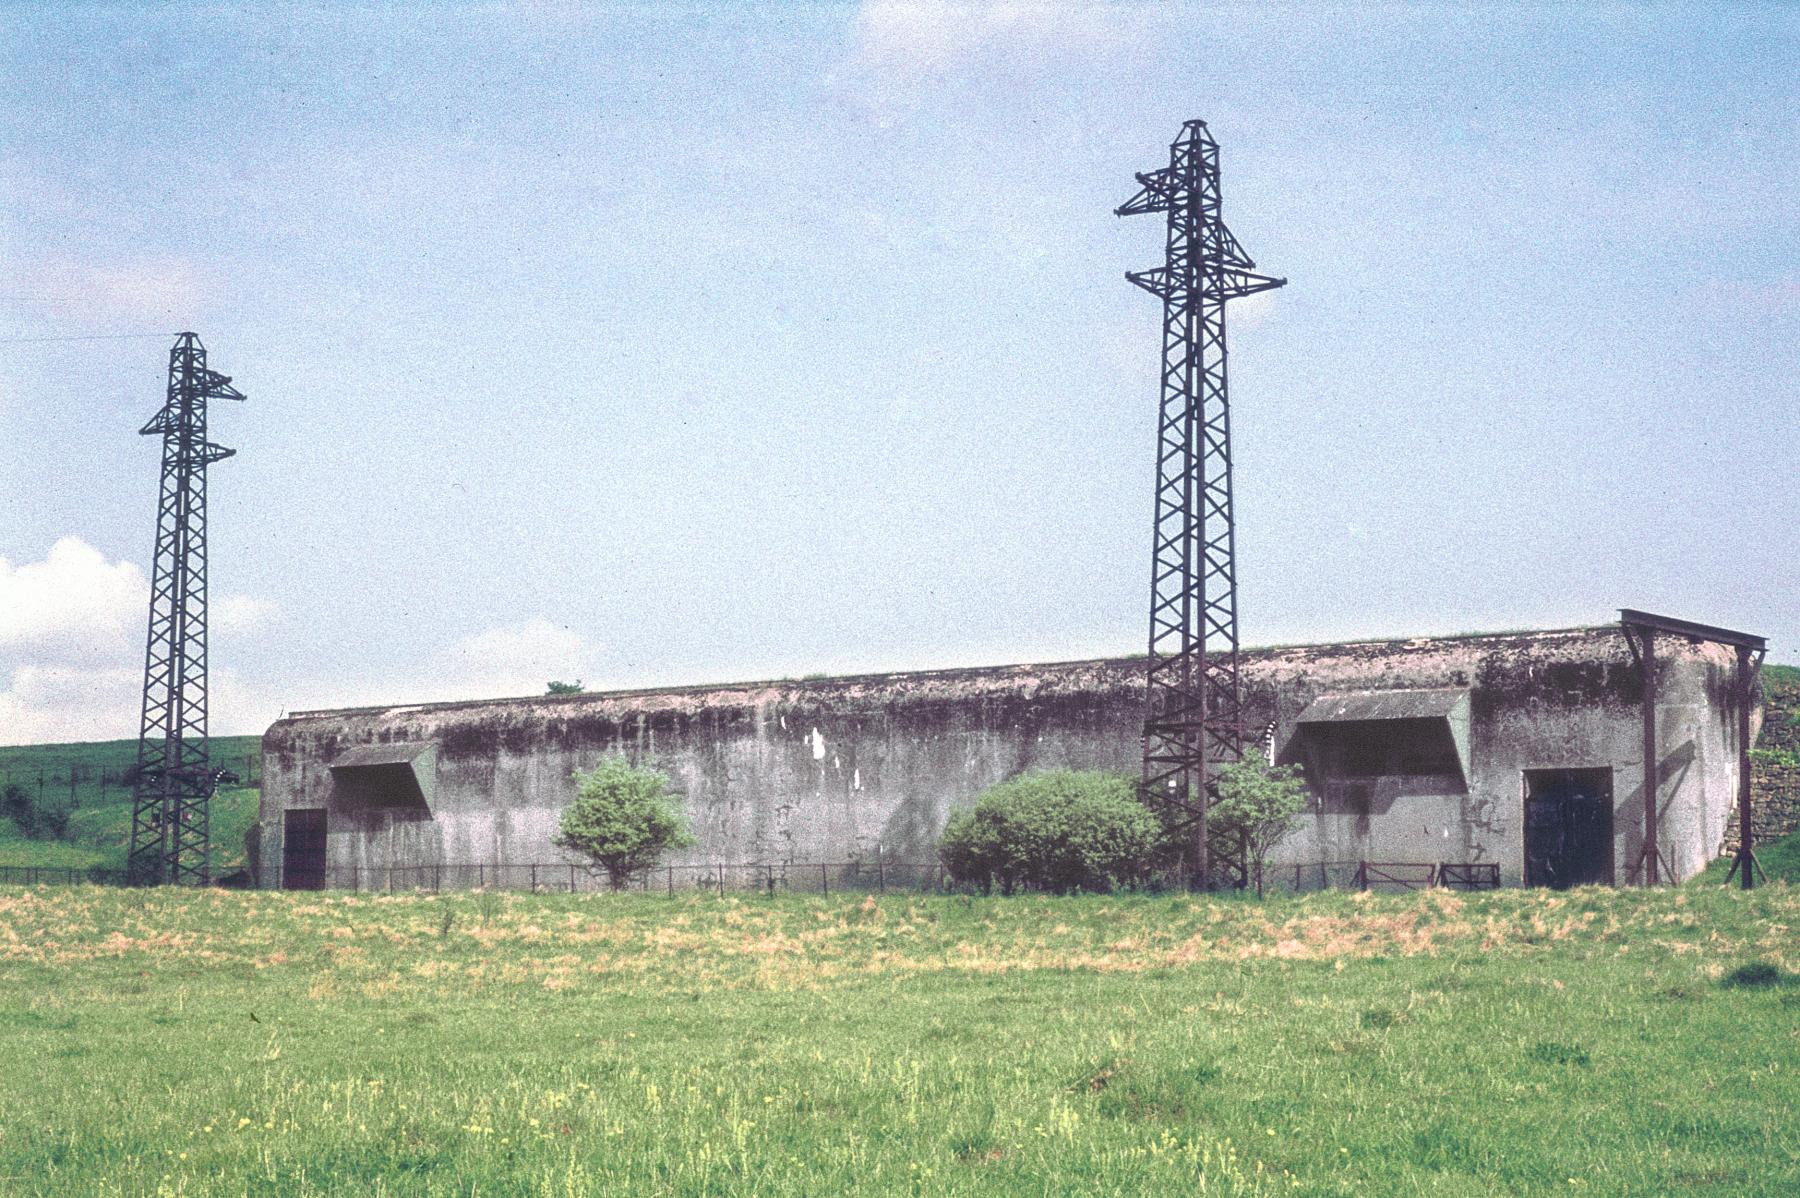 Ligne Maginot - XIVRY CIRCOURT - (Infrastructures électriques) - Photo extérieure en 1975
Les poteaux des arrivées aériennes 65 KV sont encore visibles ainsi que le lorry de manutention à l'extérieur du poste